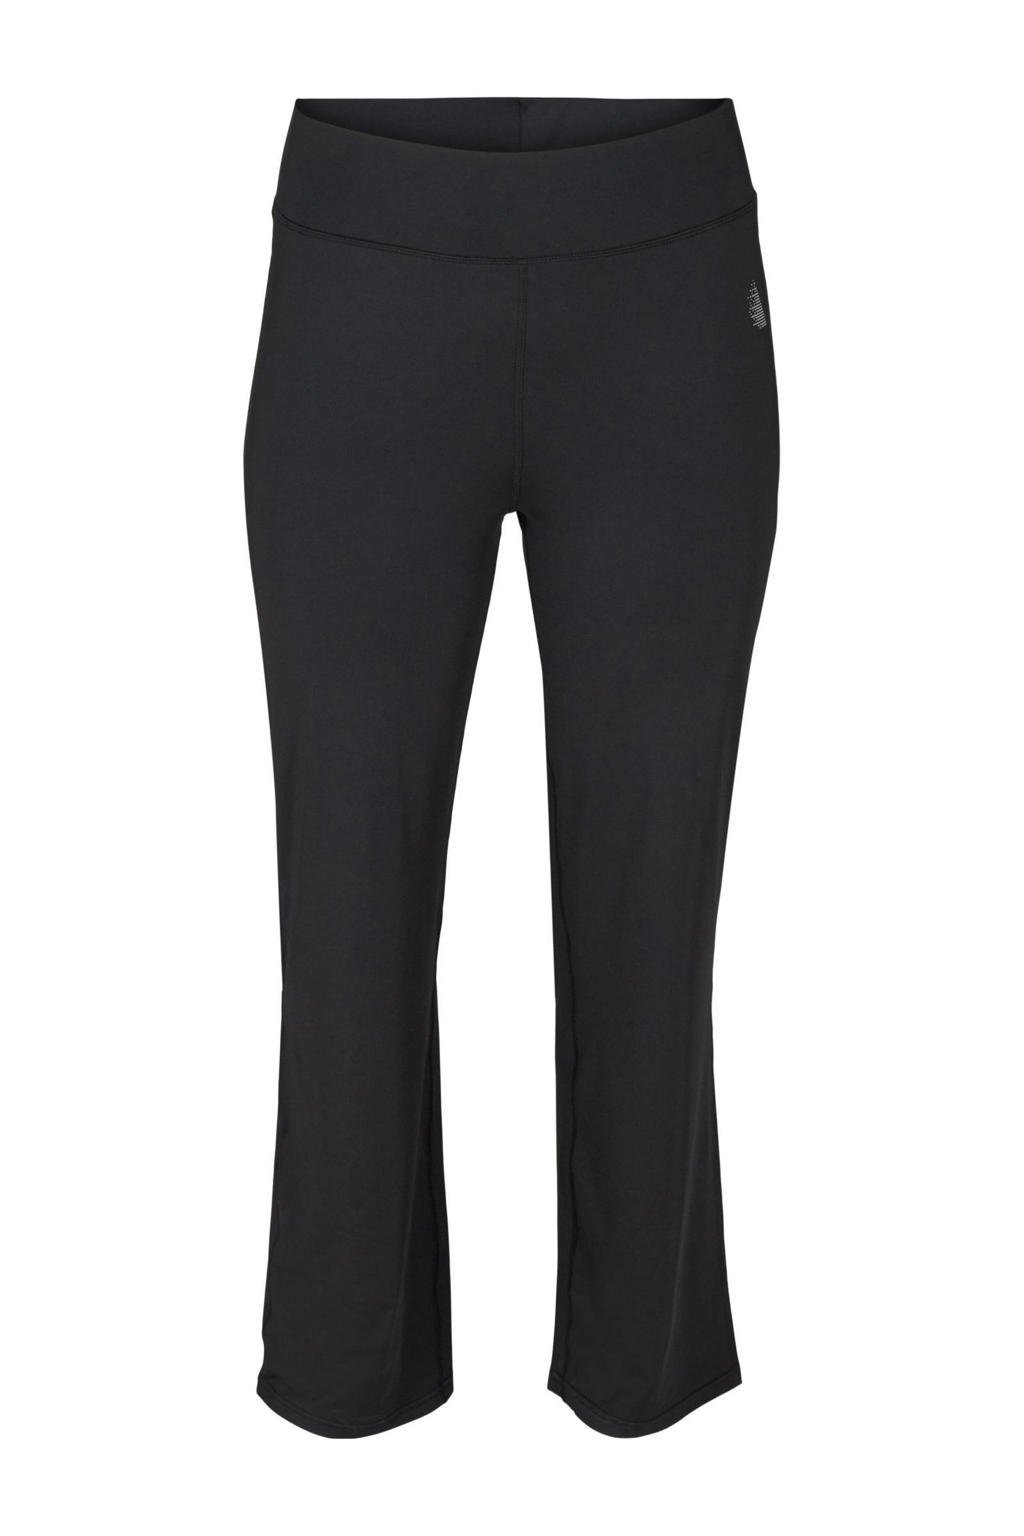 Zwarte dames ACTIVE By Zizzi Plus Size flared sportlegging Abasic van polyester met regular waist en elastische tailleband